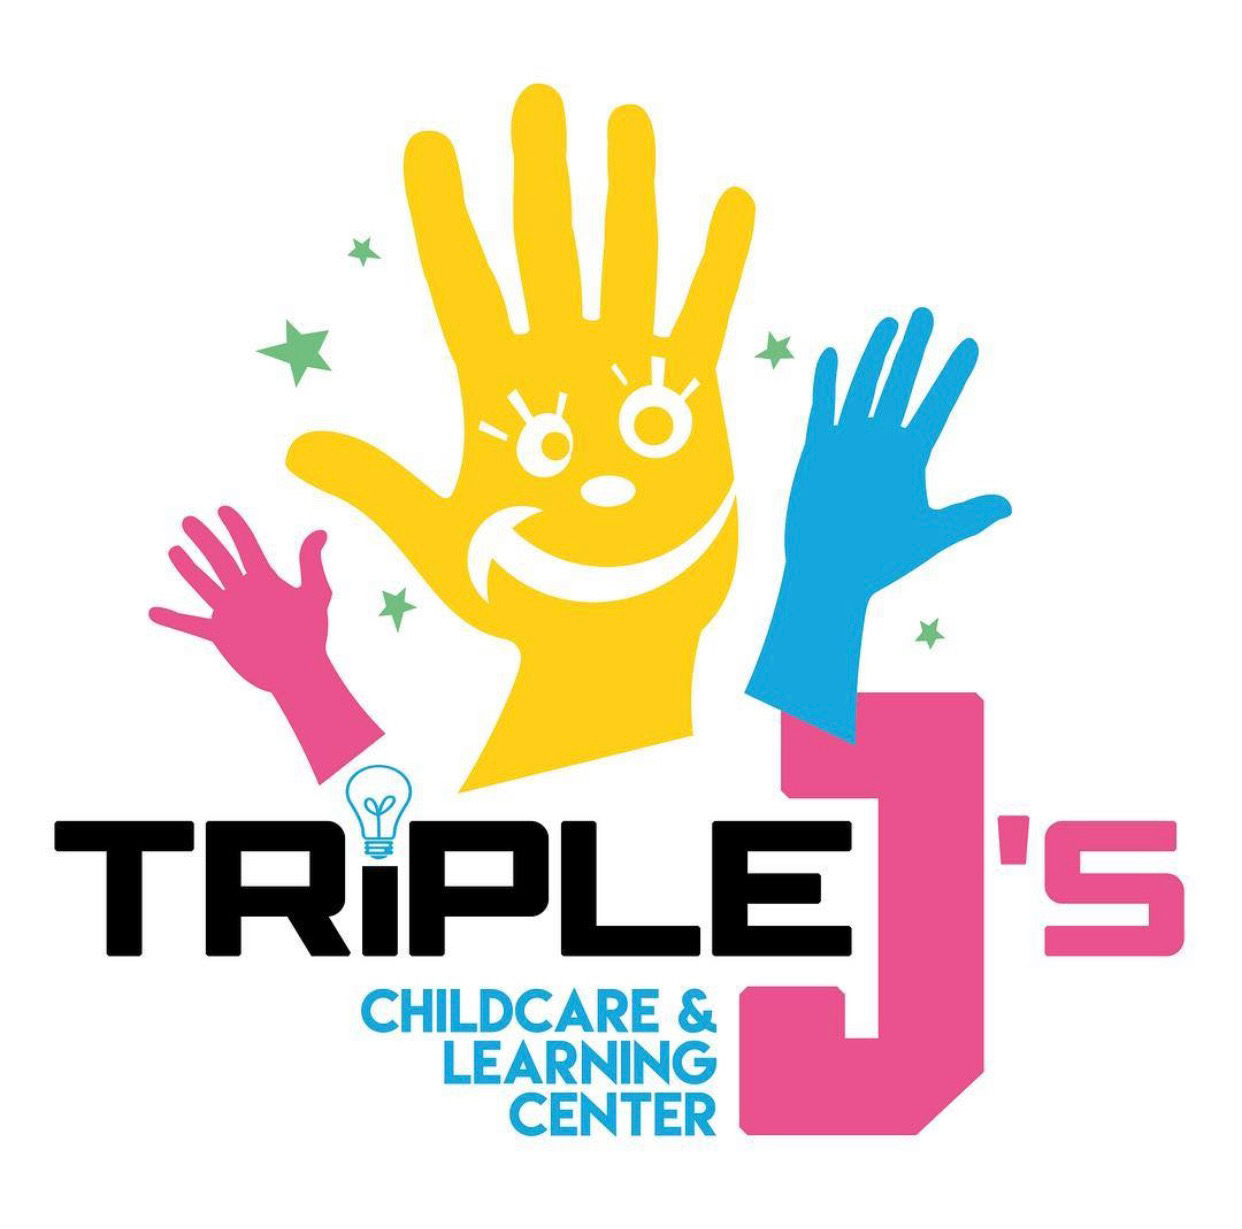 Triple J Childcare & Learning Center logo